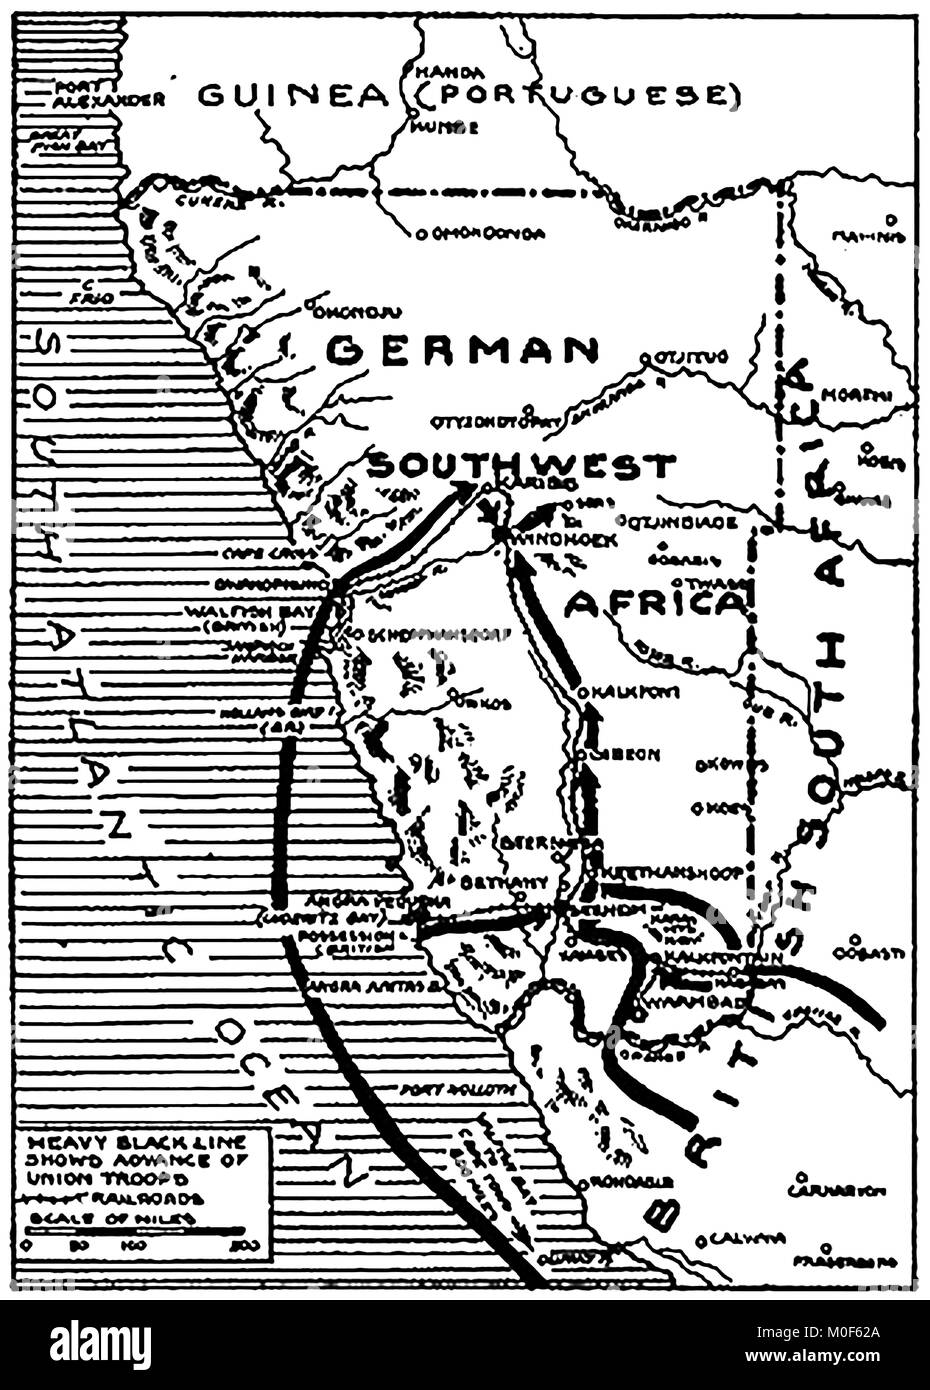 La PREMIÈRE GUERRE MONDIALE - UN 1917 Carte montrant l'activité militaire dans l'1914-1918 Première Guerre mondiale - l'Afrique du Sud-ouest et sa conquête par les troupes de l'Union sous le général Botha. Campagne d'Afrique de l'Est Banque D'Images